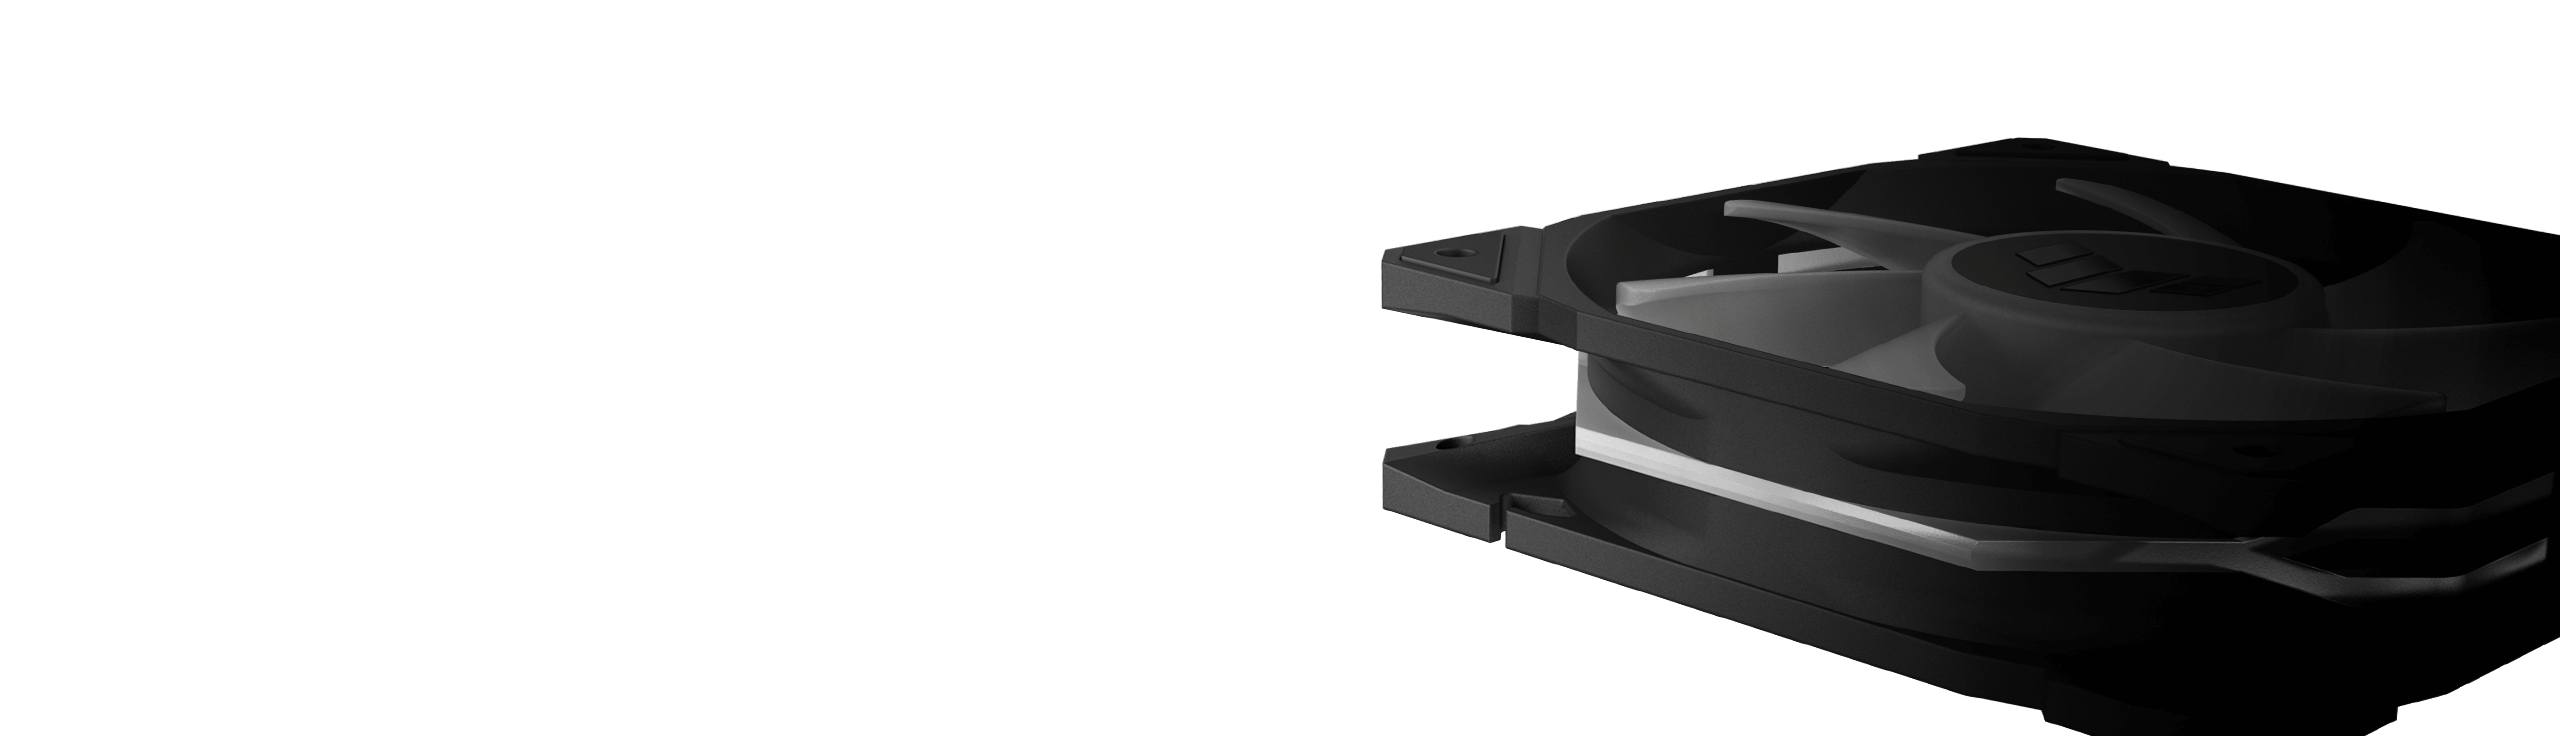 marco de ventilador extragrueso de 28 mm del ventilador ASUS TUF Gaming TR120 ARGB en comparación con otros marcos de ventilador de 25 mm